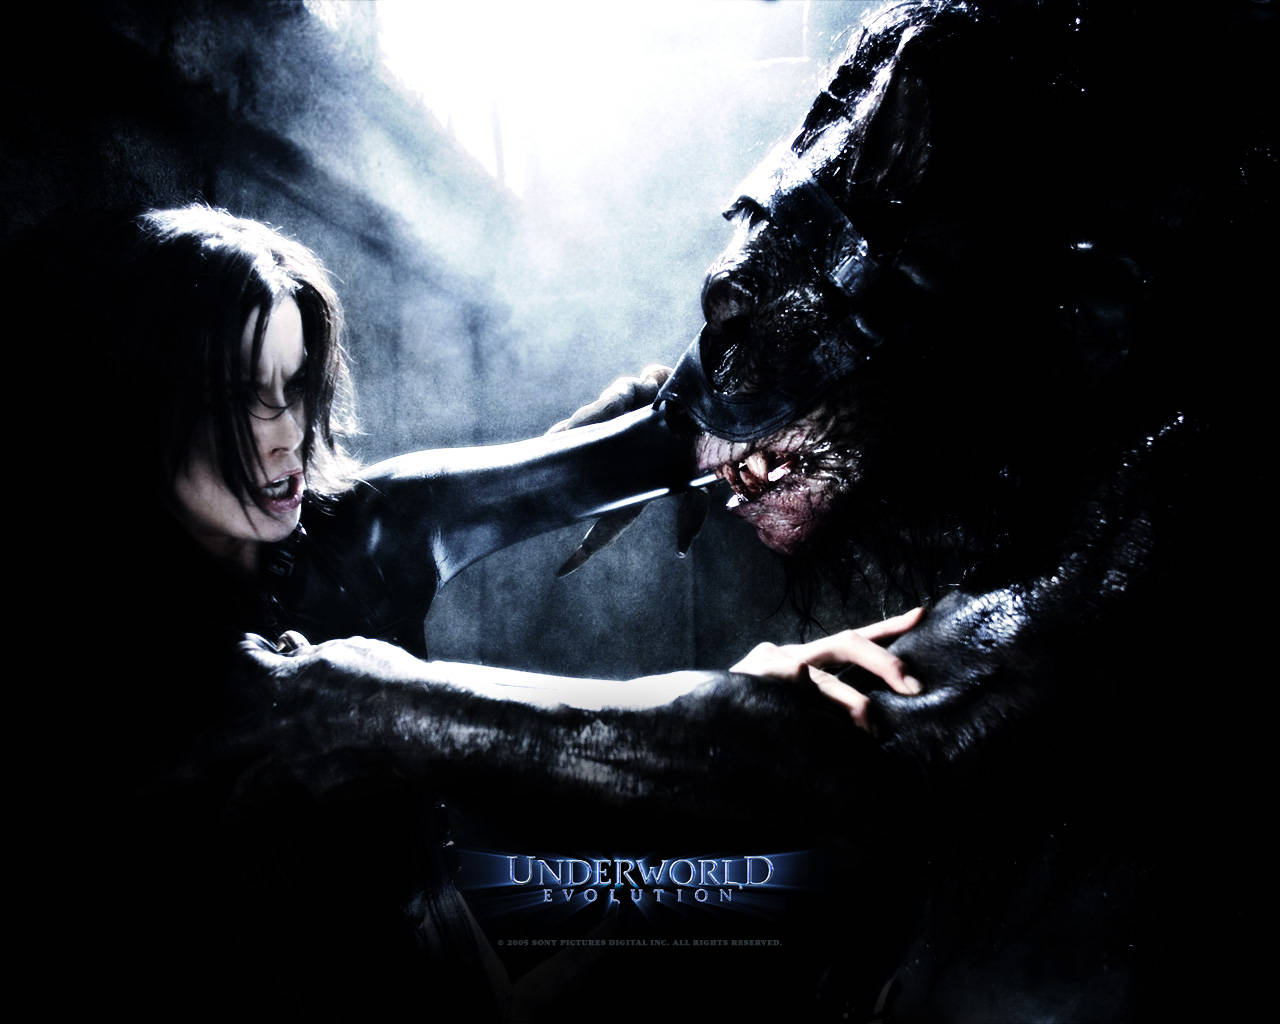 Kate Beckinsale as the Vampire Death Dealer Selene in the Underworld Franchise Wallpaper